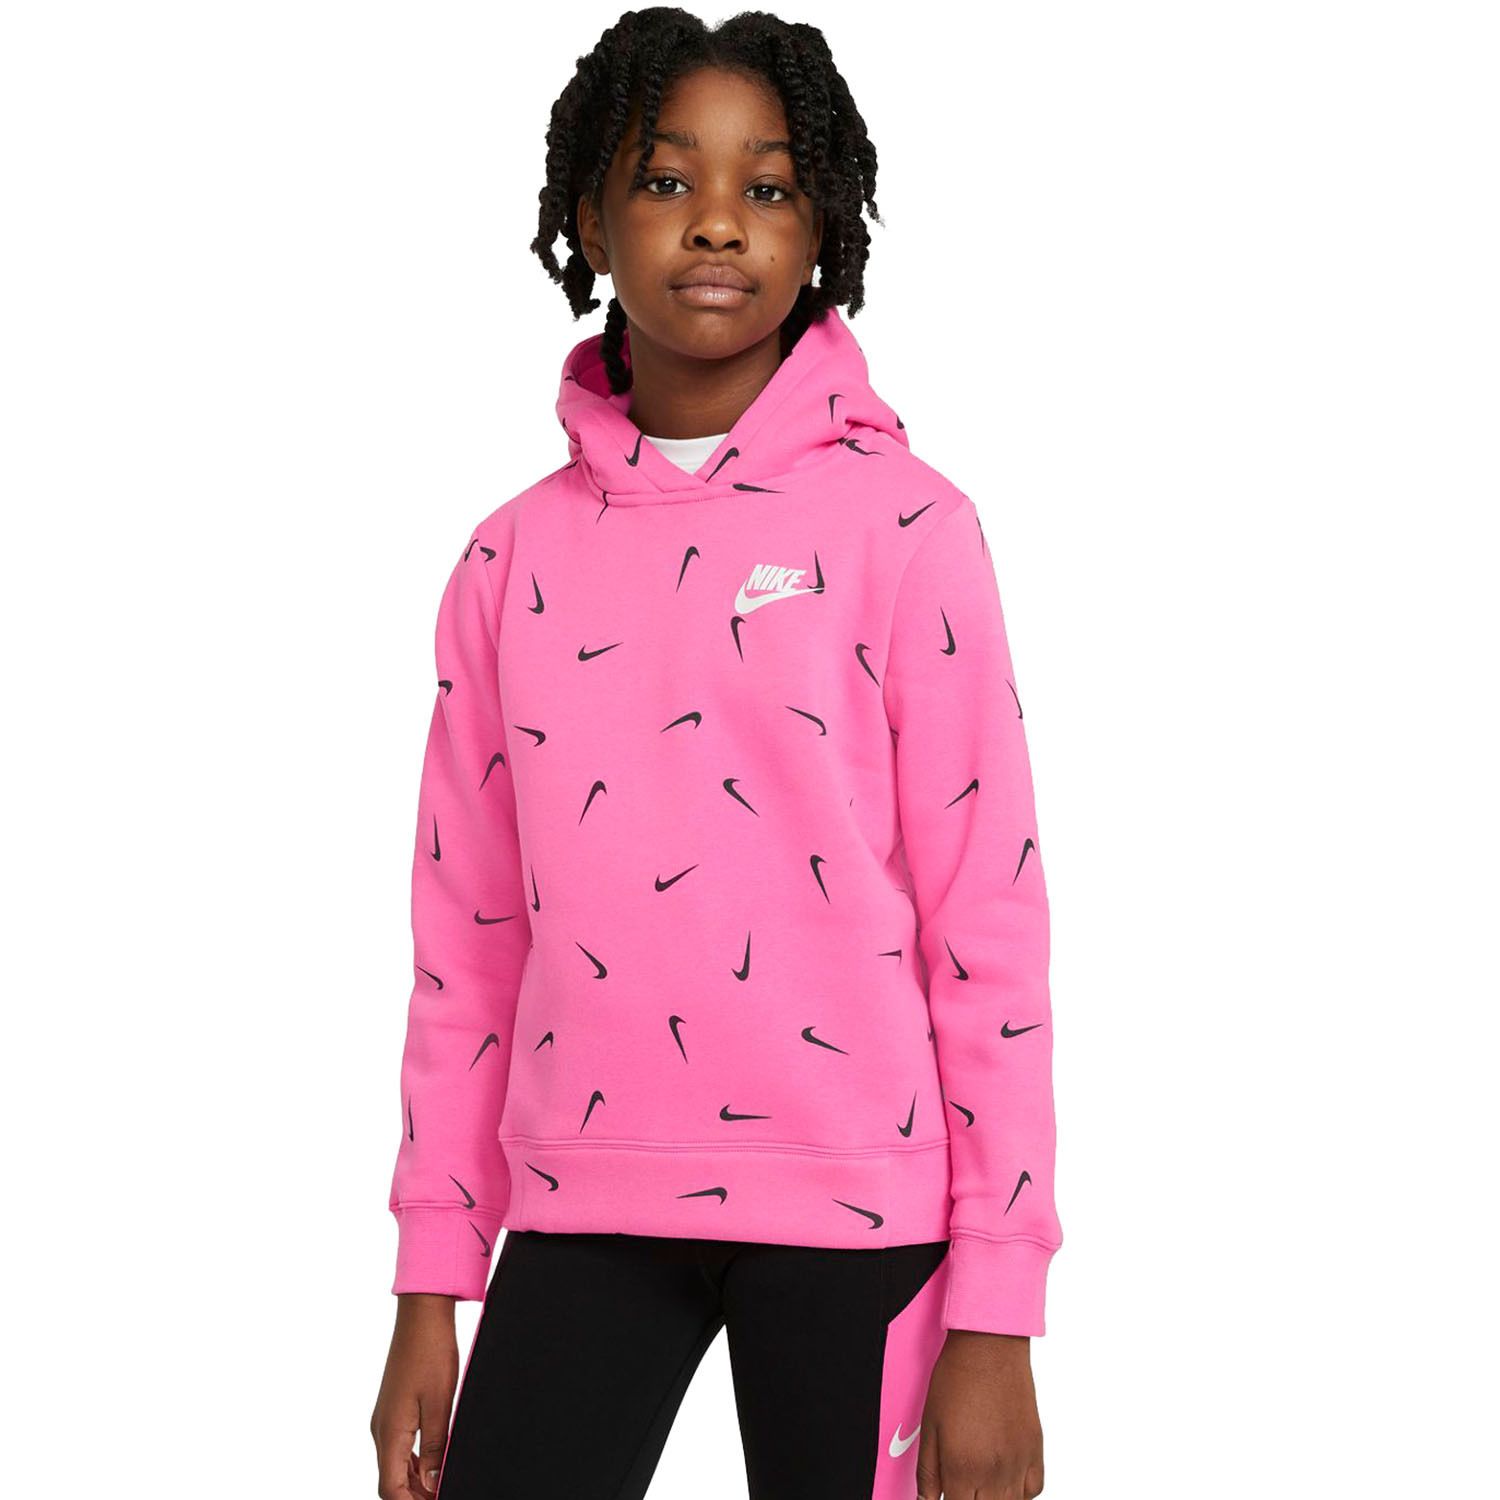 girls pink nike hoodie